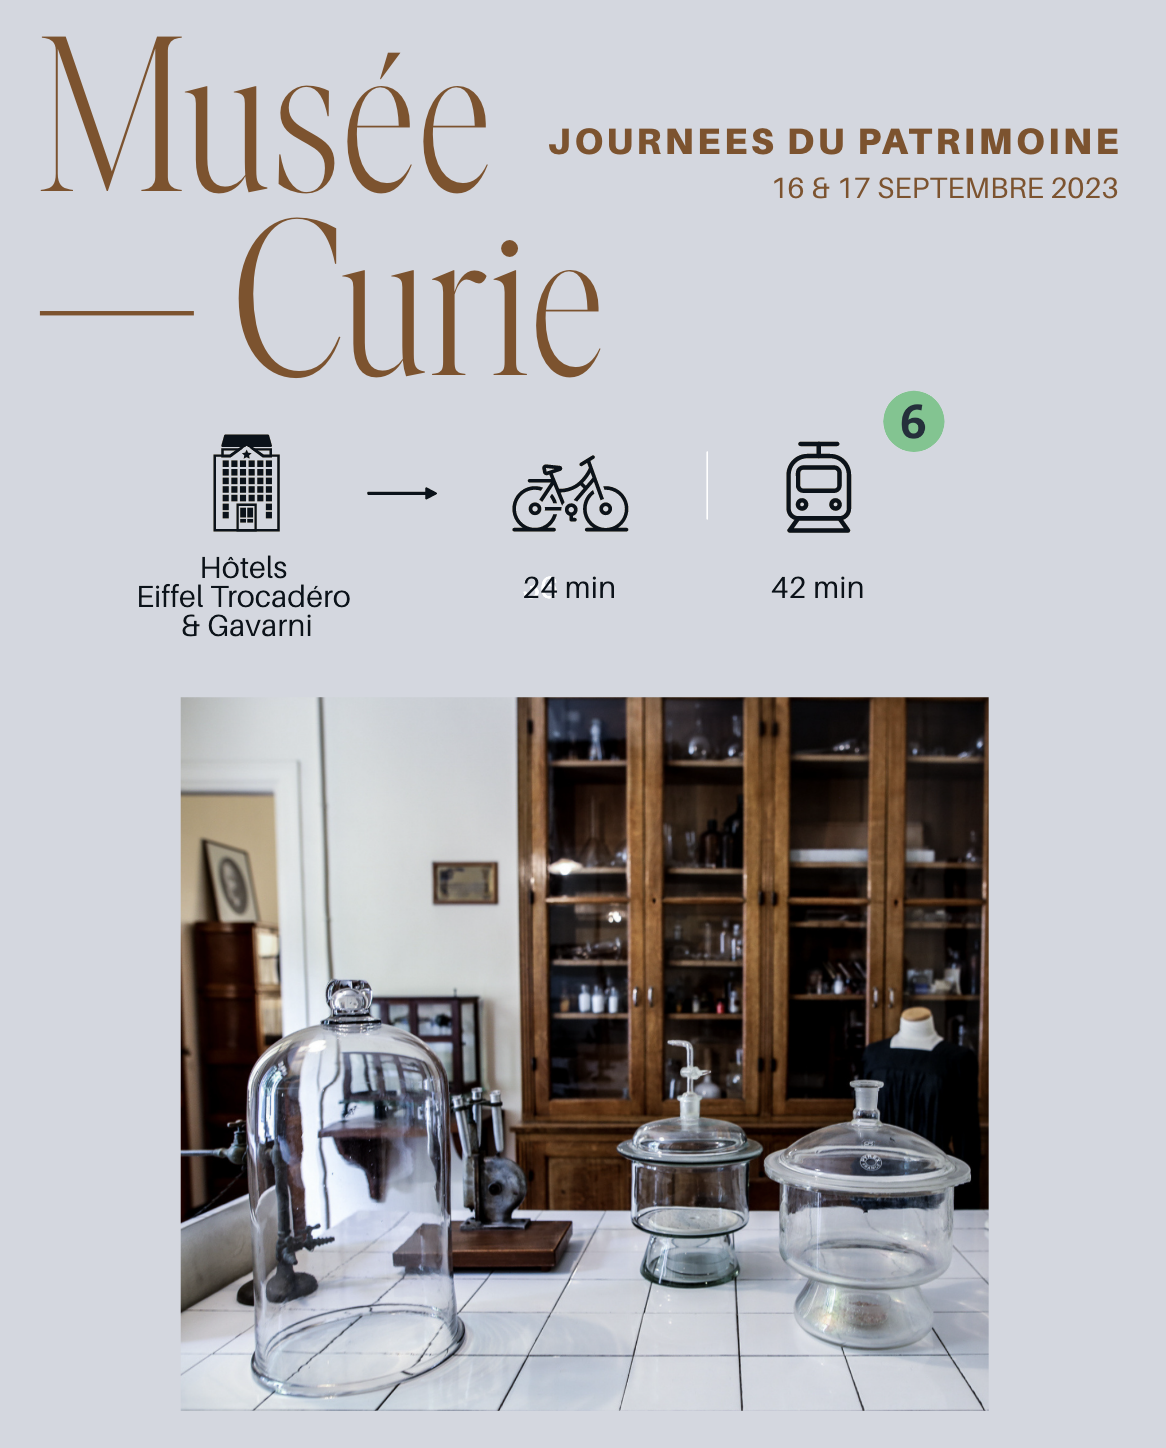 Musée Curie : Journées européennes du patrimoine